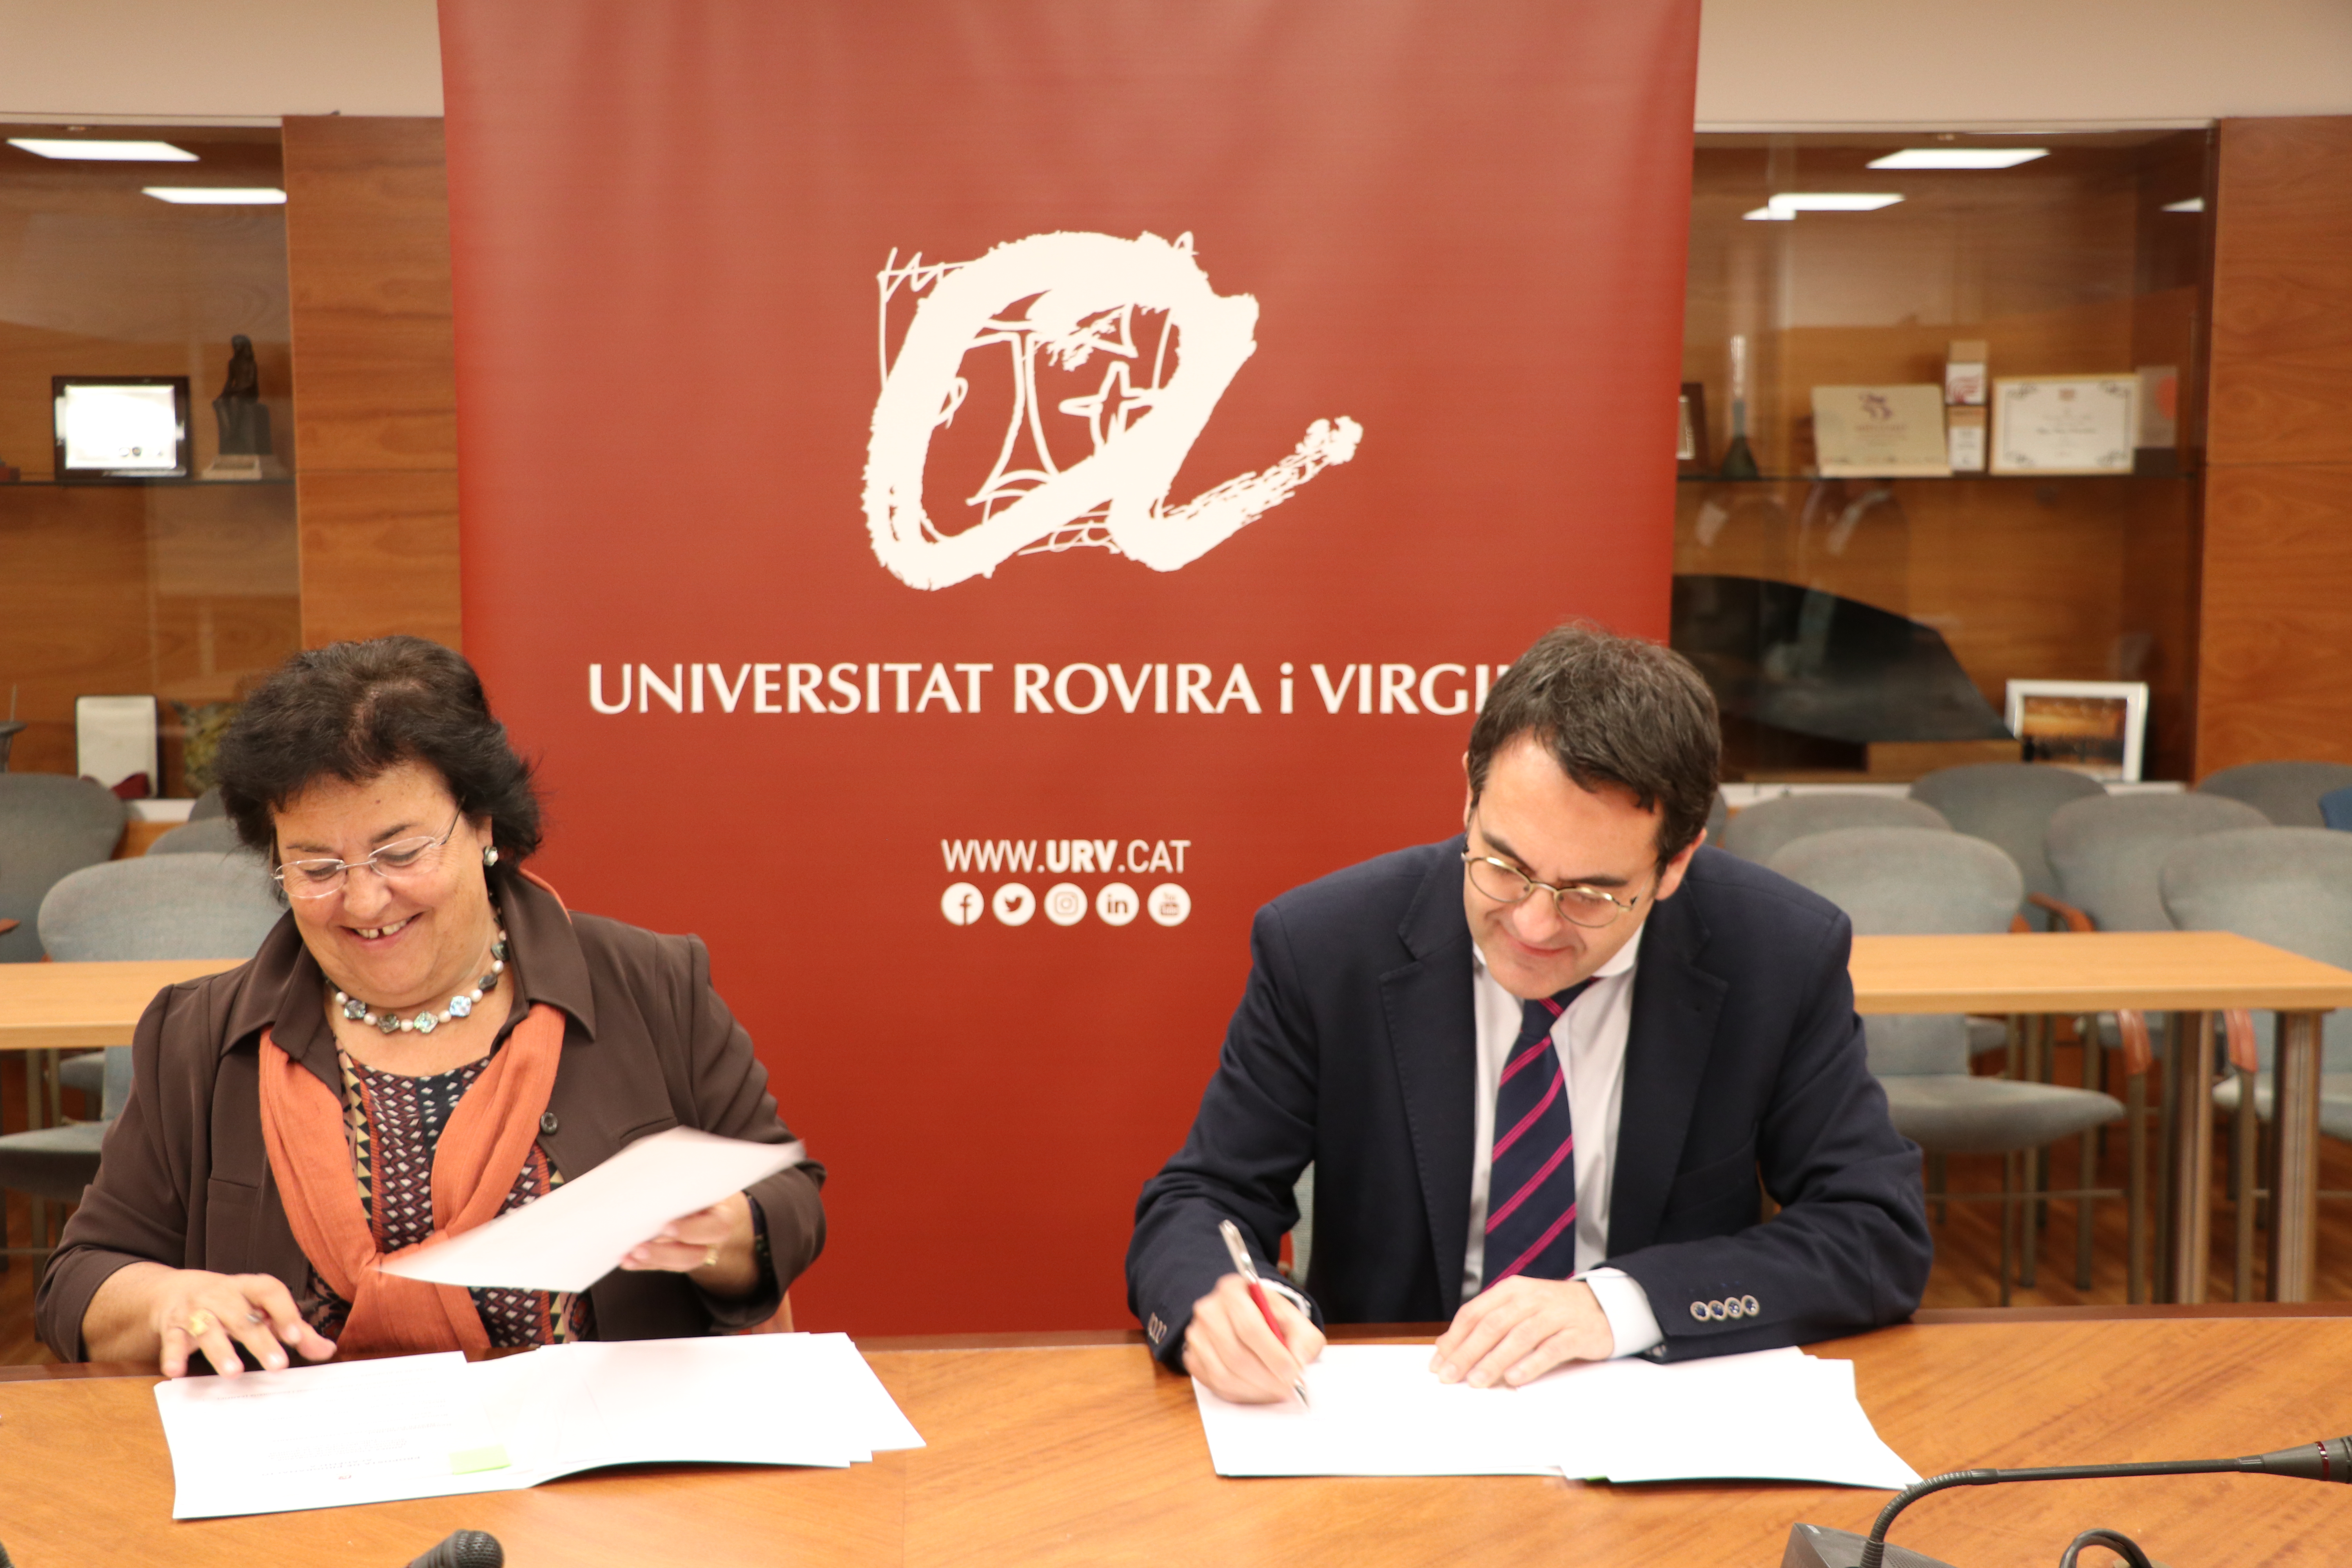 La URV estrenarà el pròxim curs el Màster en Innovació en Atenció Primària en una iniciativa pionera a l’Estat espanyol